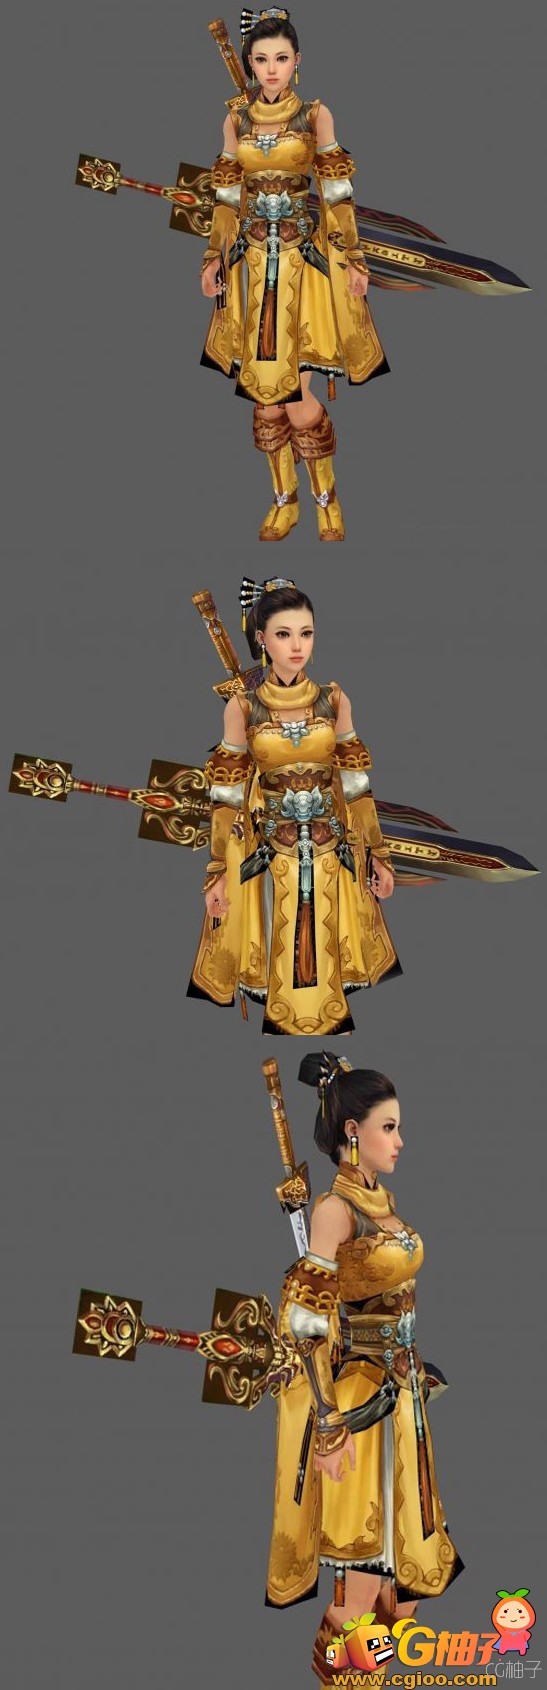 《剑三》游戏古代女性人物3D角色模型 漂亮古装MM3D模型下载